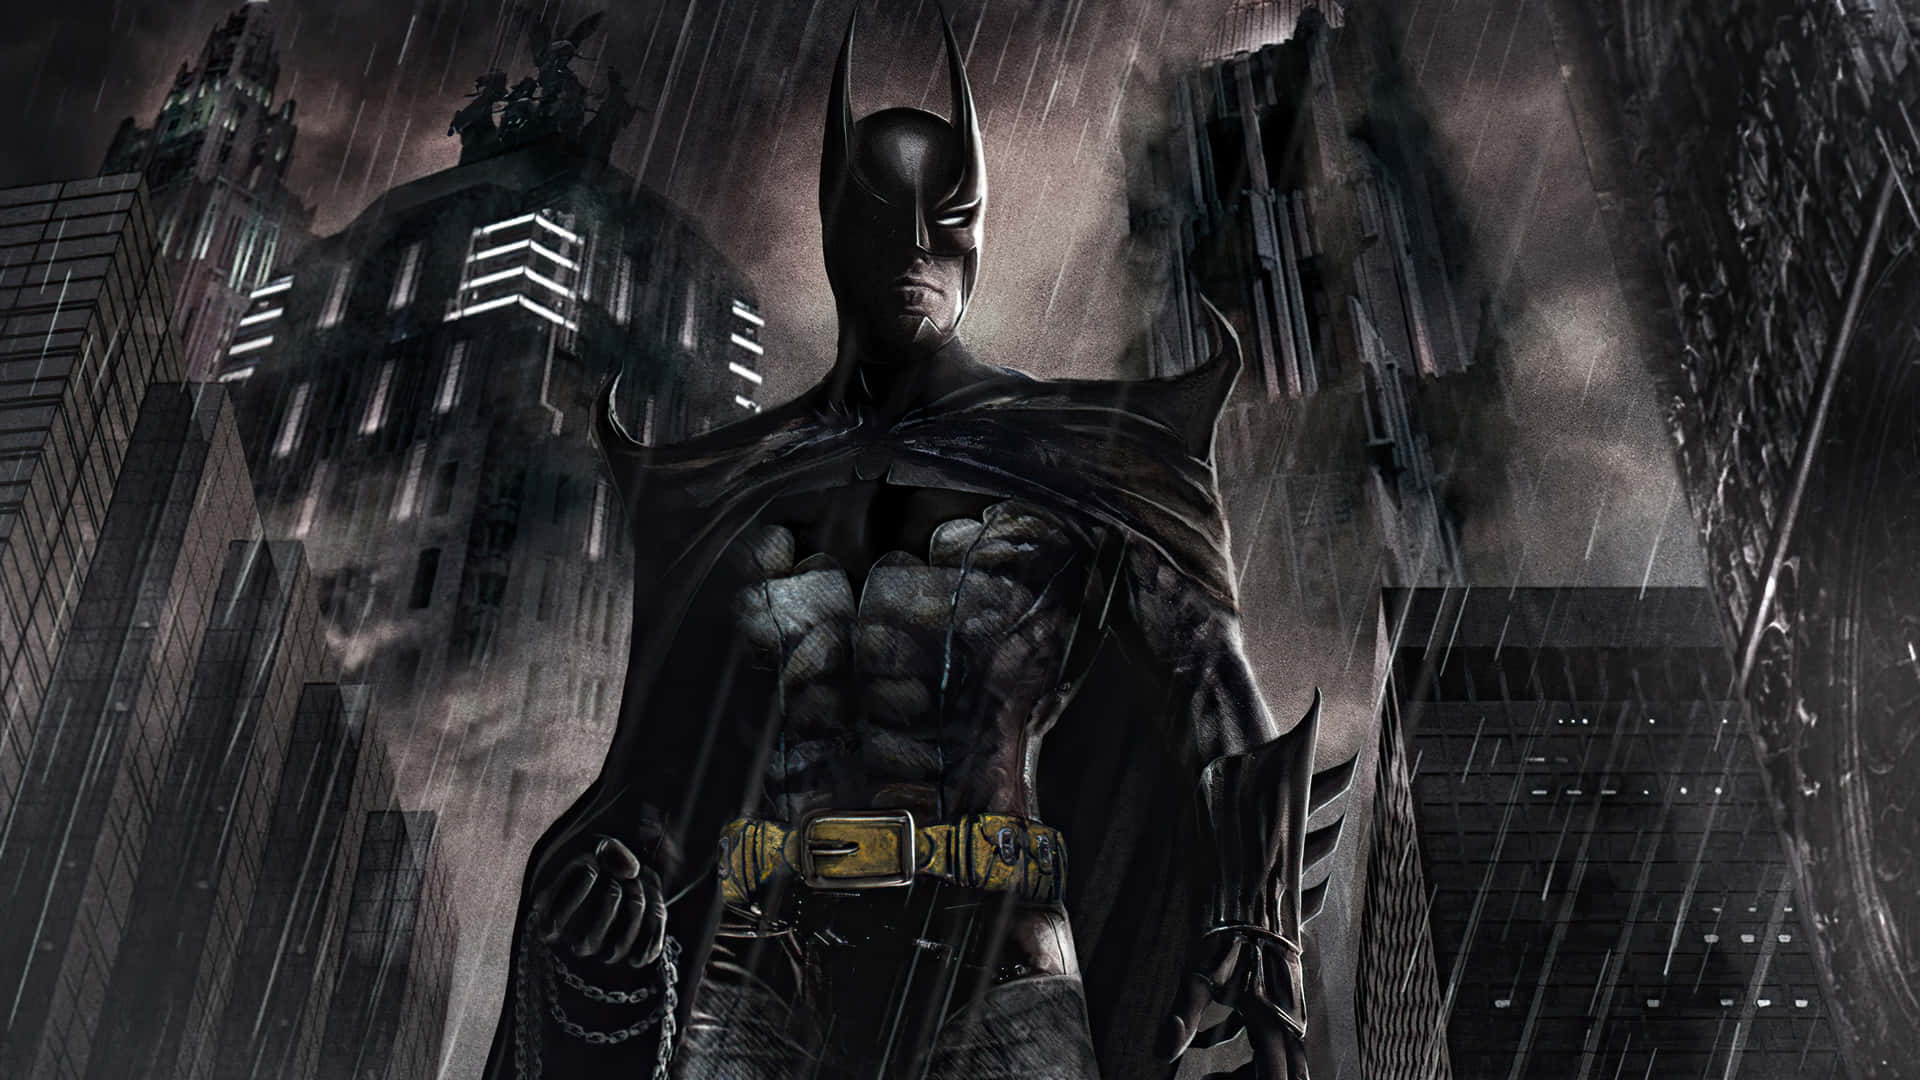 Free Awesome Batman Wallpaper Downloads, [100+] Awesome Batman Wallpapers  for FREE 